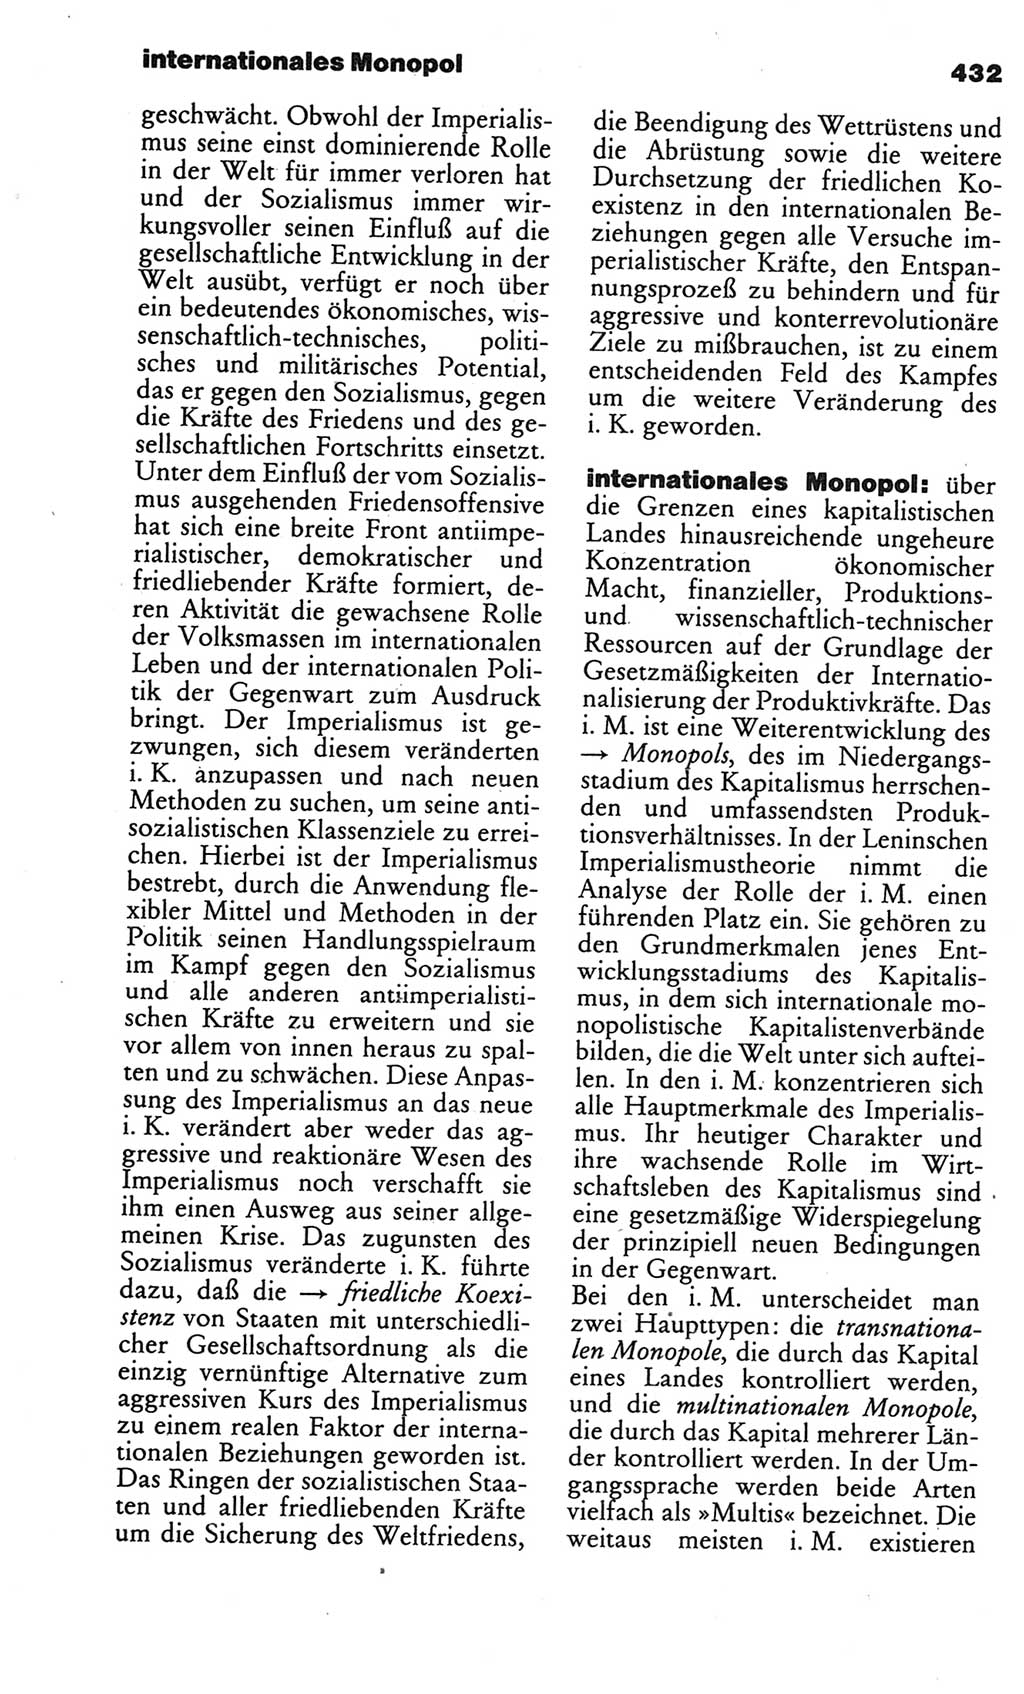 Kleines politisches Wörterbuch [Deutsche Demokratische Republik (DDR)] 1986, Seite 432 (Kl. pol. Wb. DDR 1986, S. 432)